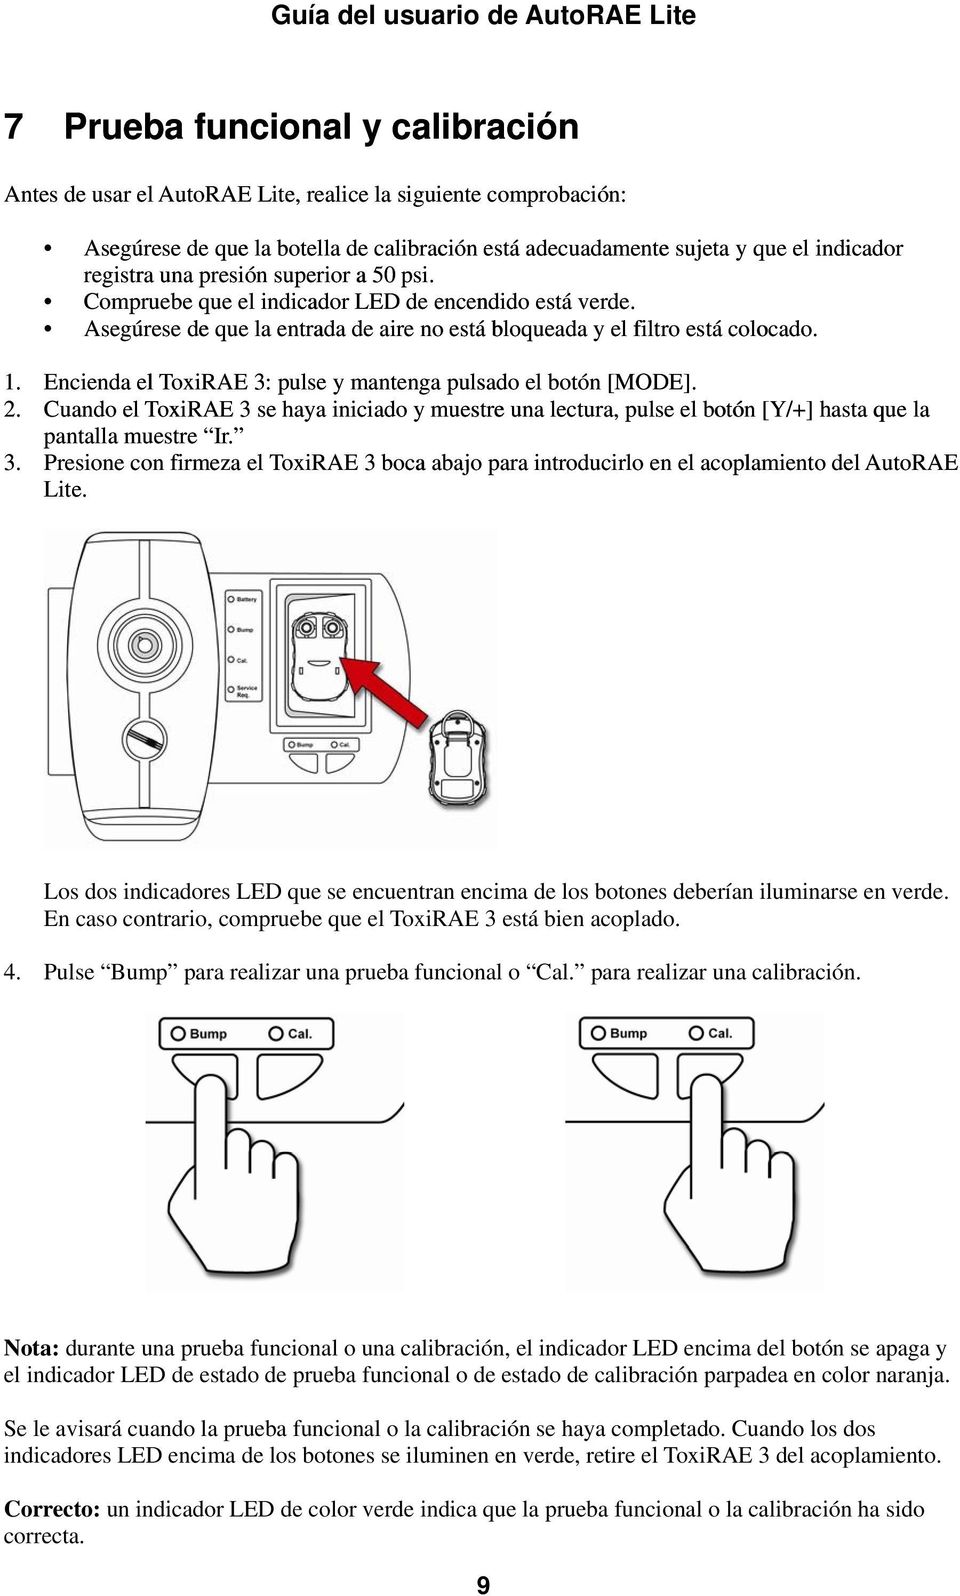 Encienda el ToxiRAE 3: pulse y mantenga pulsado el botón [MODE]. 2. Cuando el ToxiRAE 3 se haya iniciado y muestre una lectura, pulse el botón [Y/+] hasta que la pantalla muestre Ir. 3. Presione con firmeza el ToxiRAE 3 boca abajo para introducirlo en el acoplamiento del AutoRAE Lite.